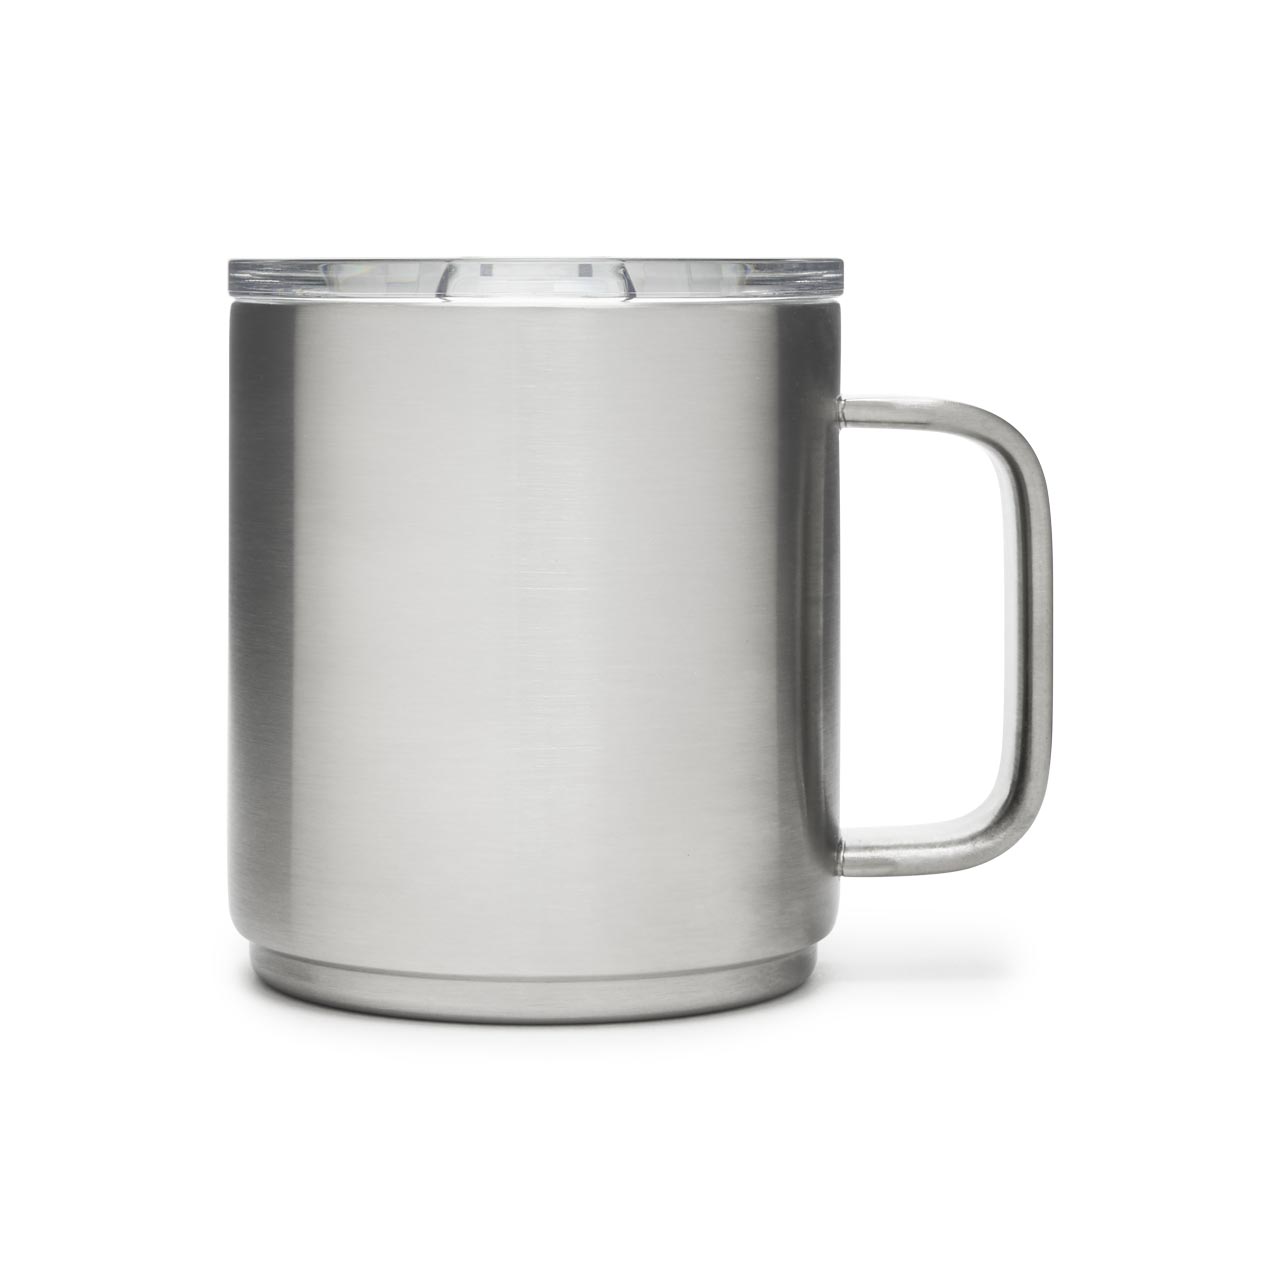 YETI Rambler Mug, 296 ml, Stainless Steel